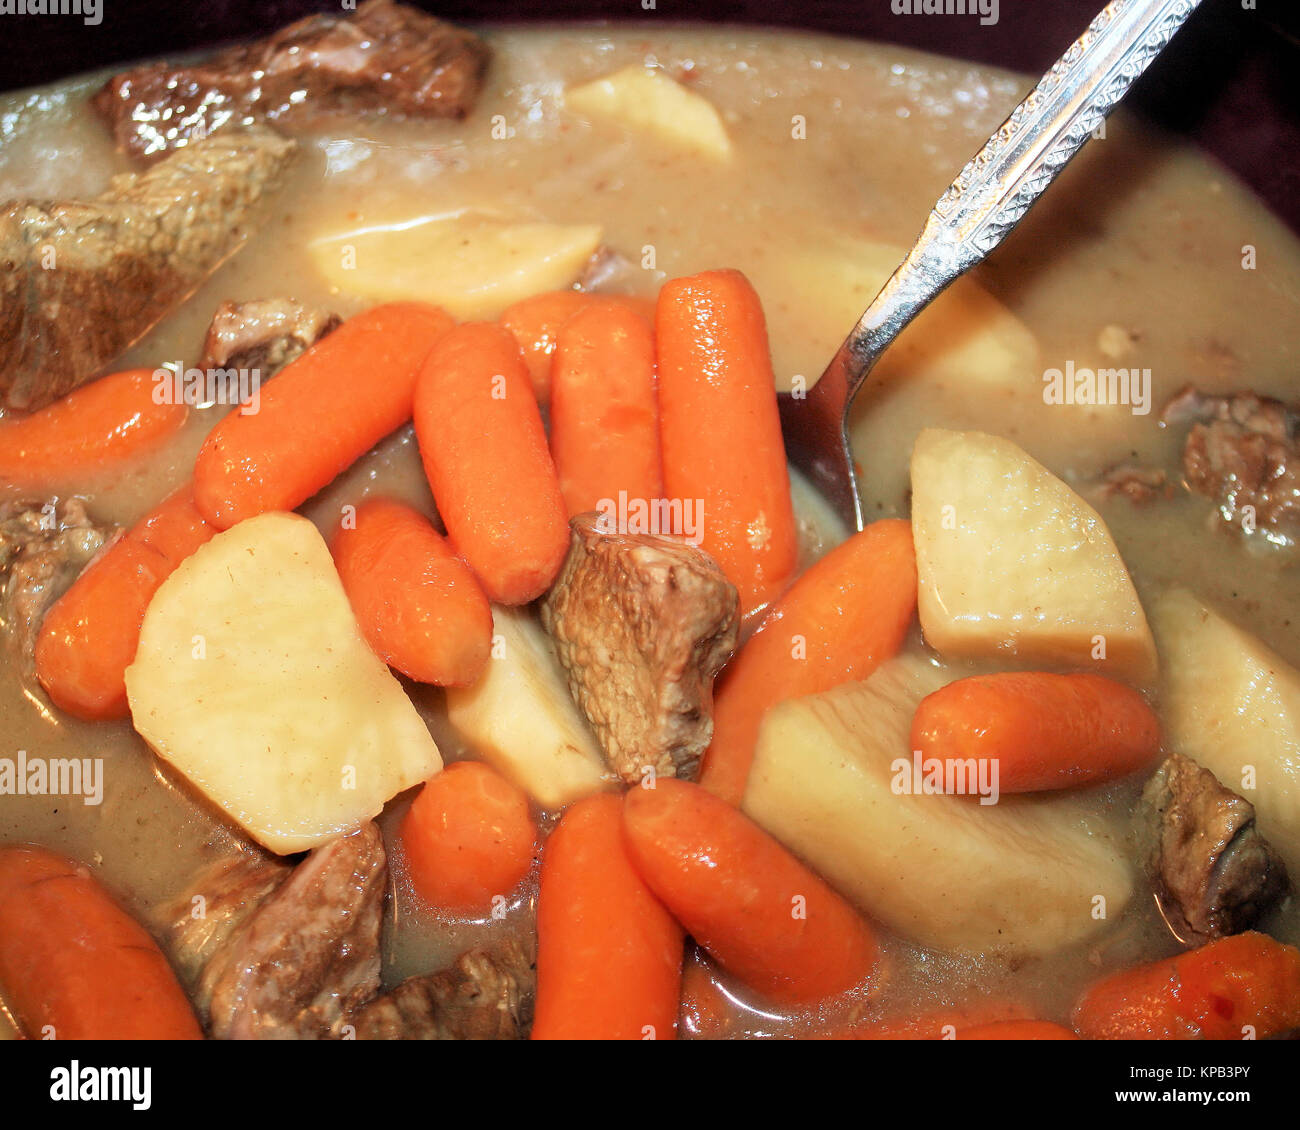 Coccio stufato di manzo con carote, patate, lean cottura carni bovine in un ricco sugo denso Foto Stock